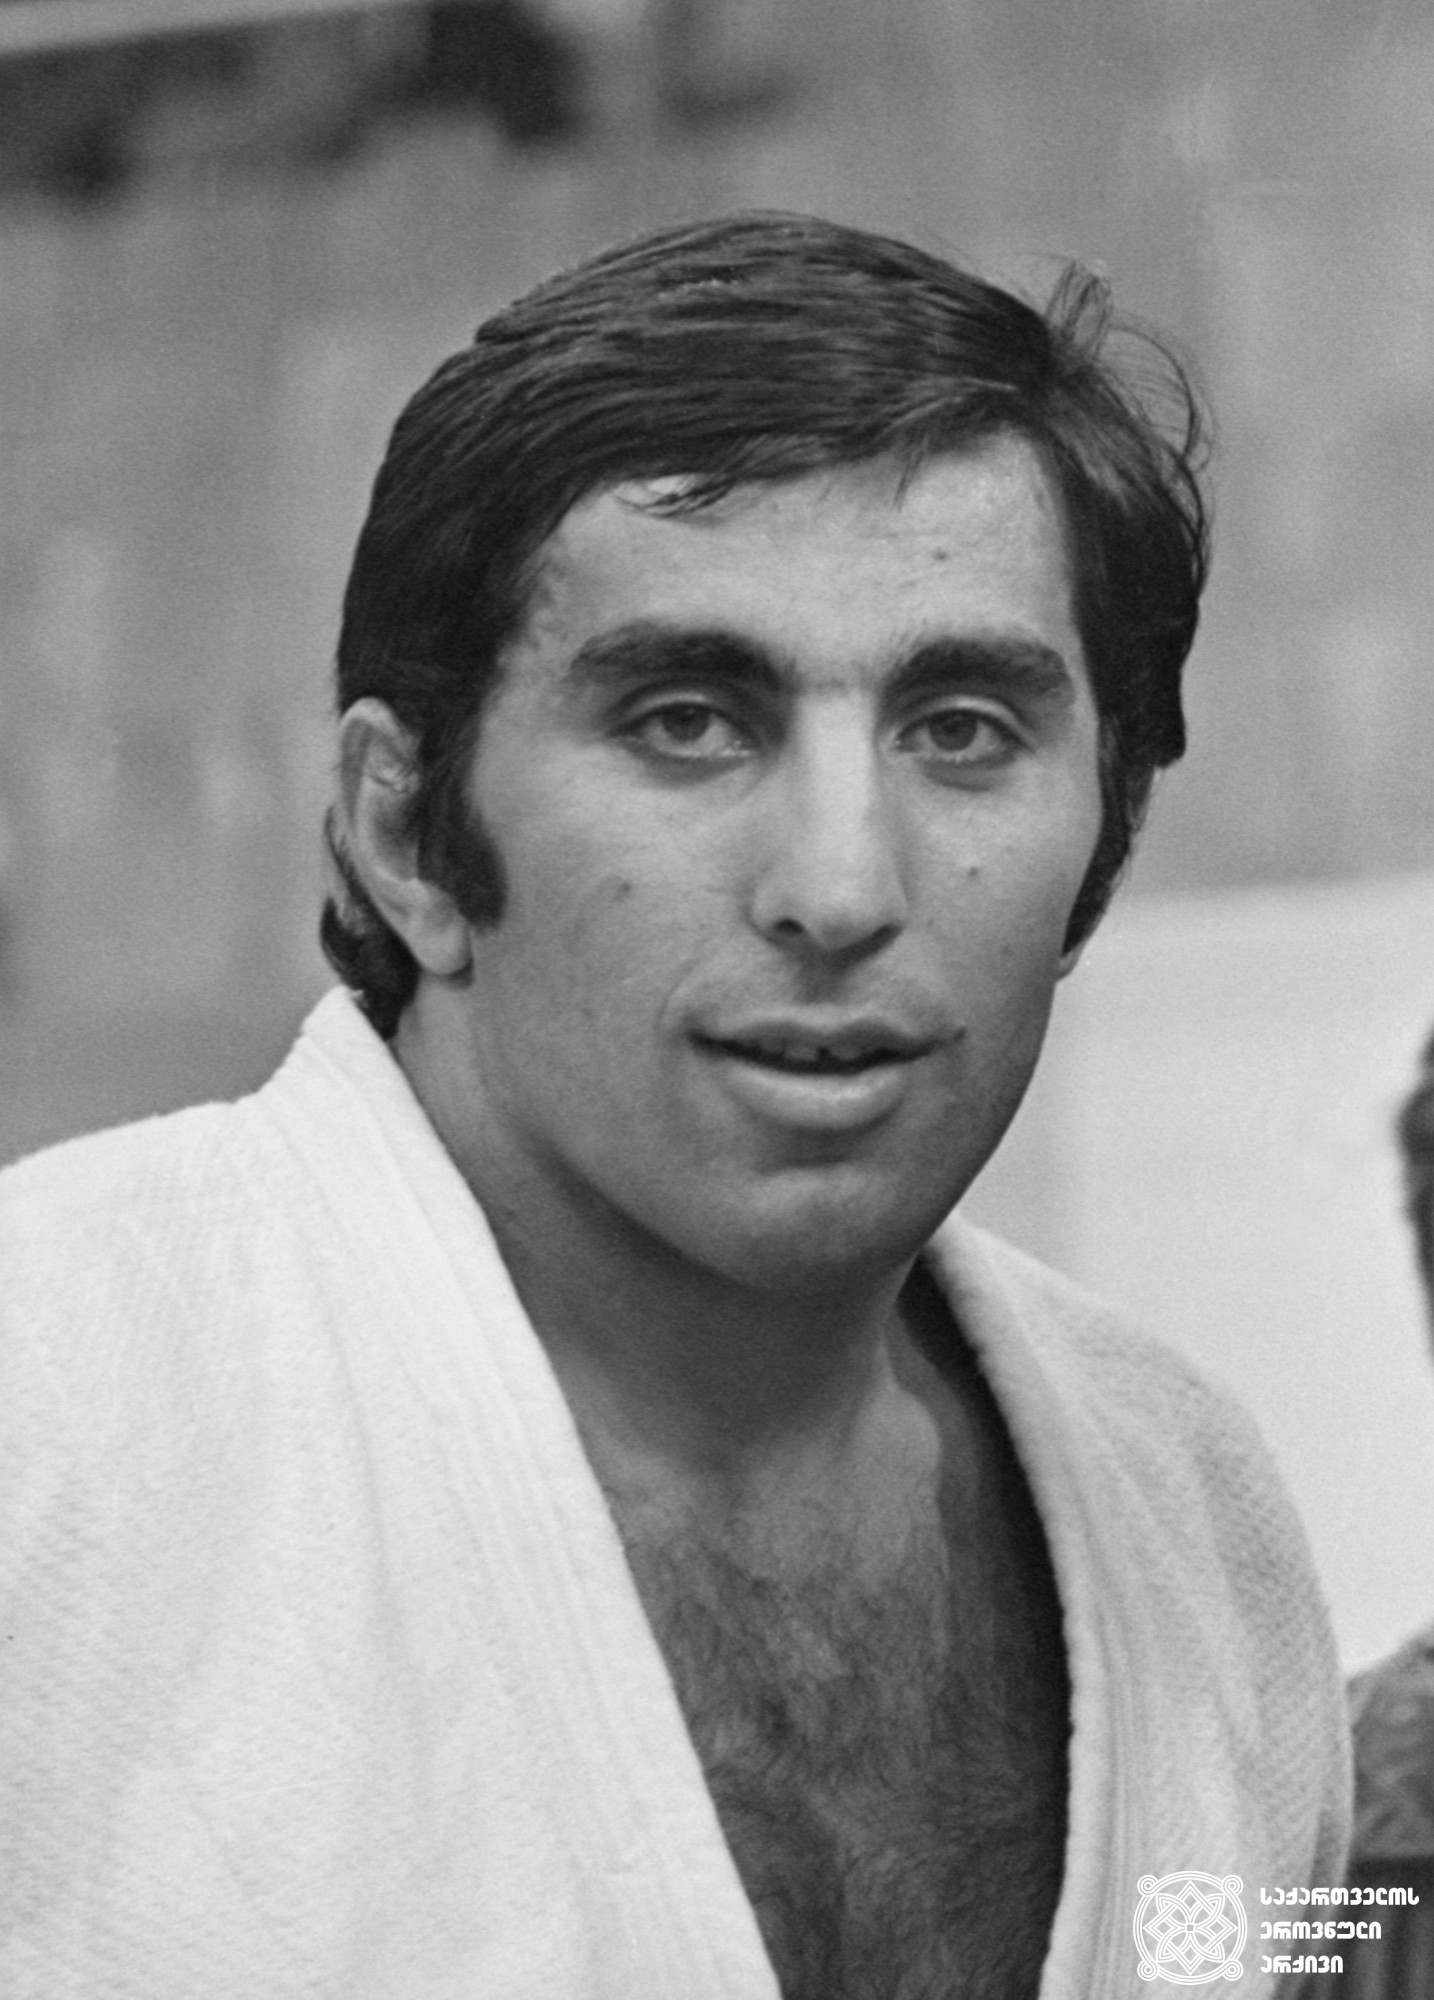 თემურ ხუბულური. <br>
სანდრო კოტორაშვილის ფოტო, 1980 წელი. <br>
XXII ოლიმპიური თამაშების მეორე პრიზიორი ძიუდოში (1980 წელი, მოსკოვი). <br>
Temur Khubuluri. <br>
Photo by Sandro Kotorashvili, 1980. <br>
Second-prize winner of the XXII Olympic Games in Judo (1980, Moscow).